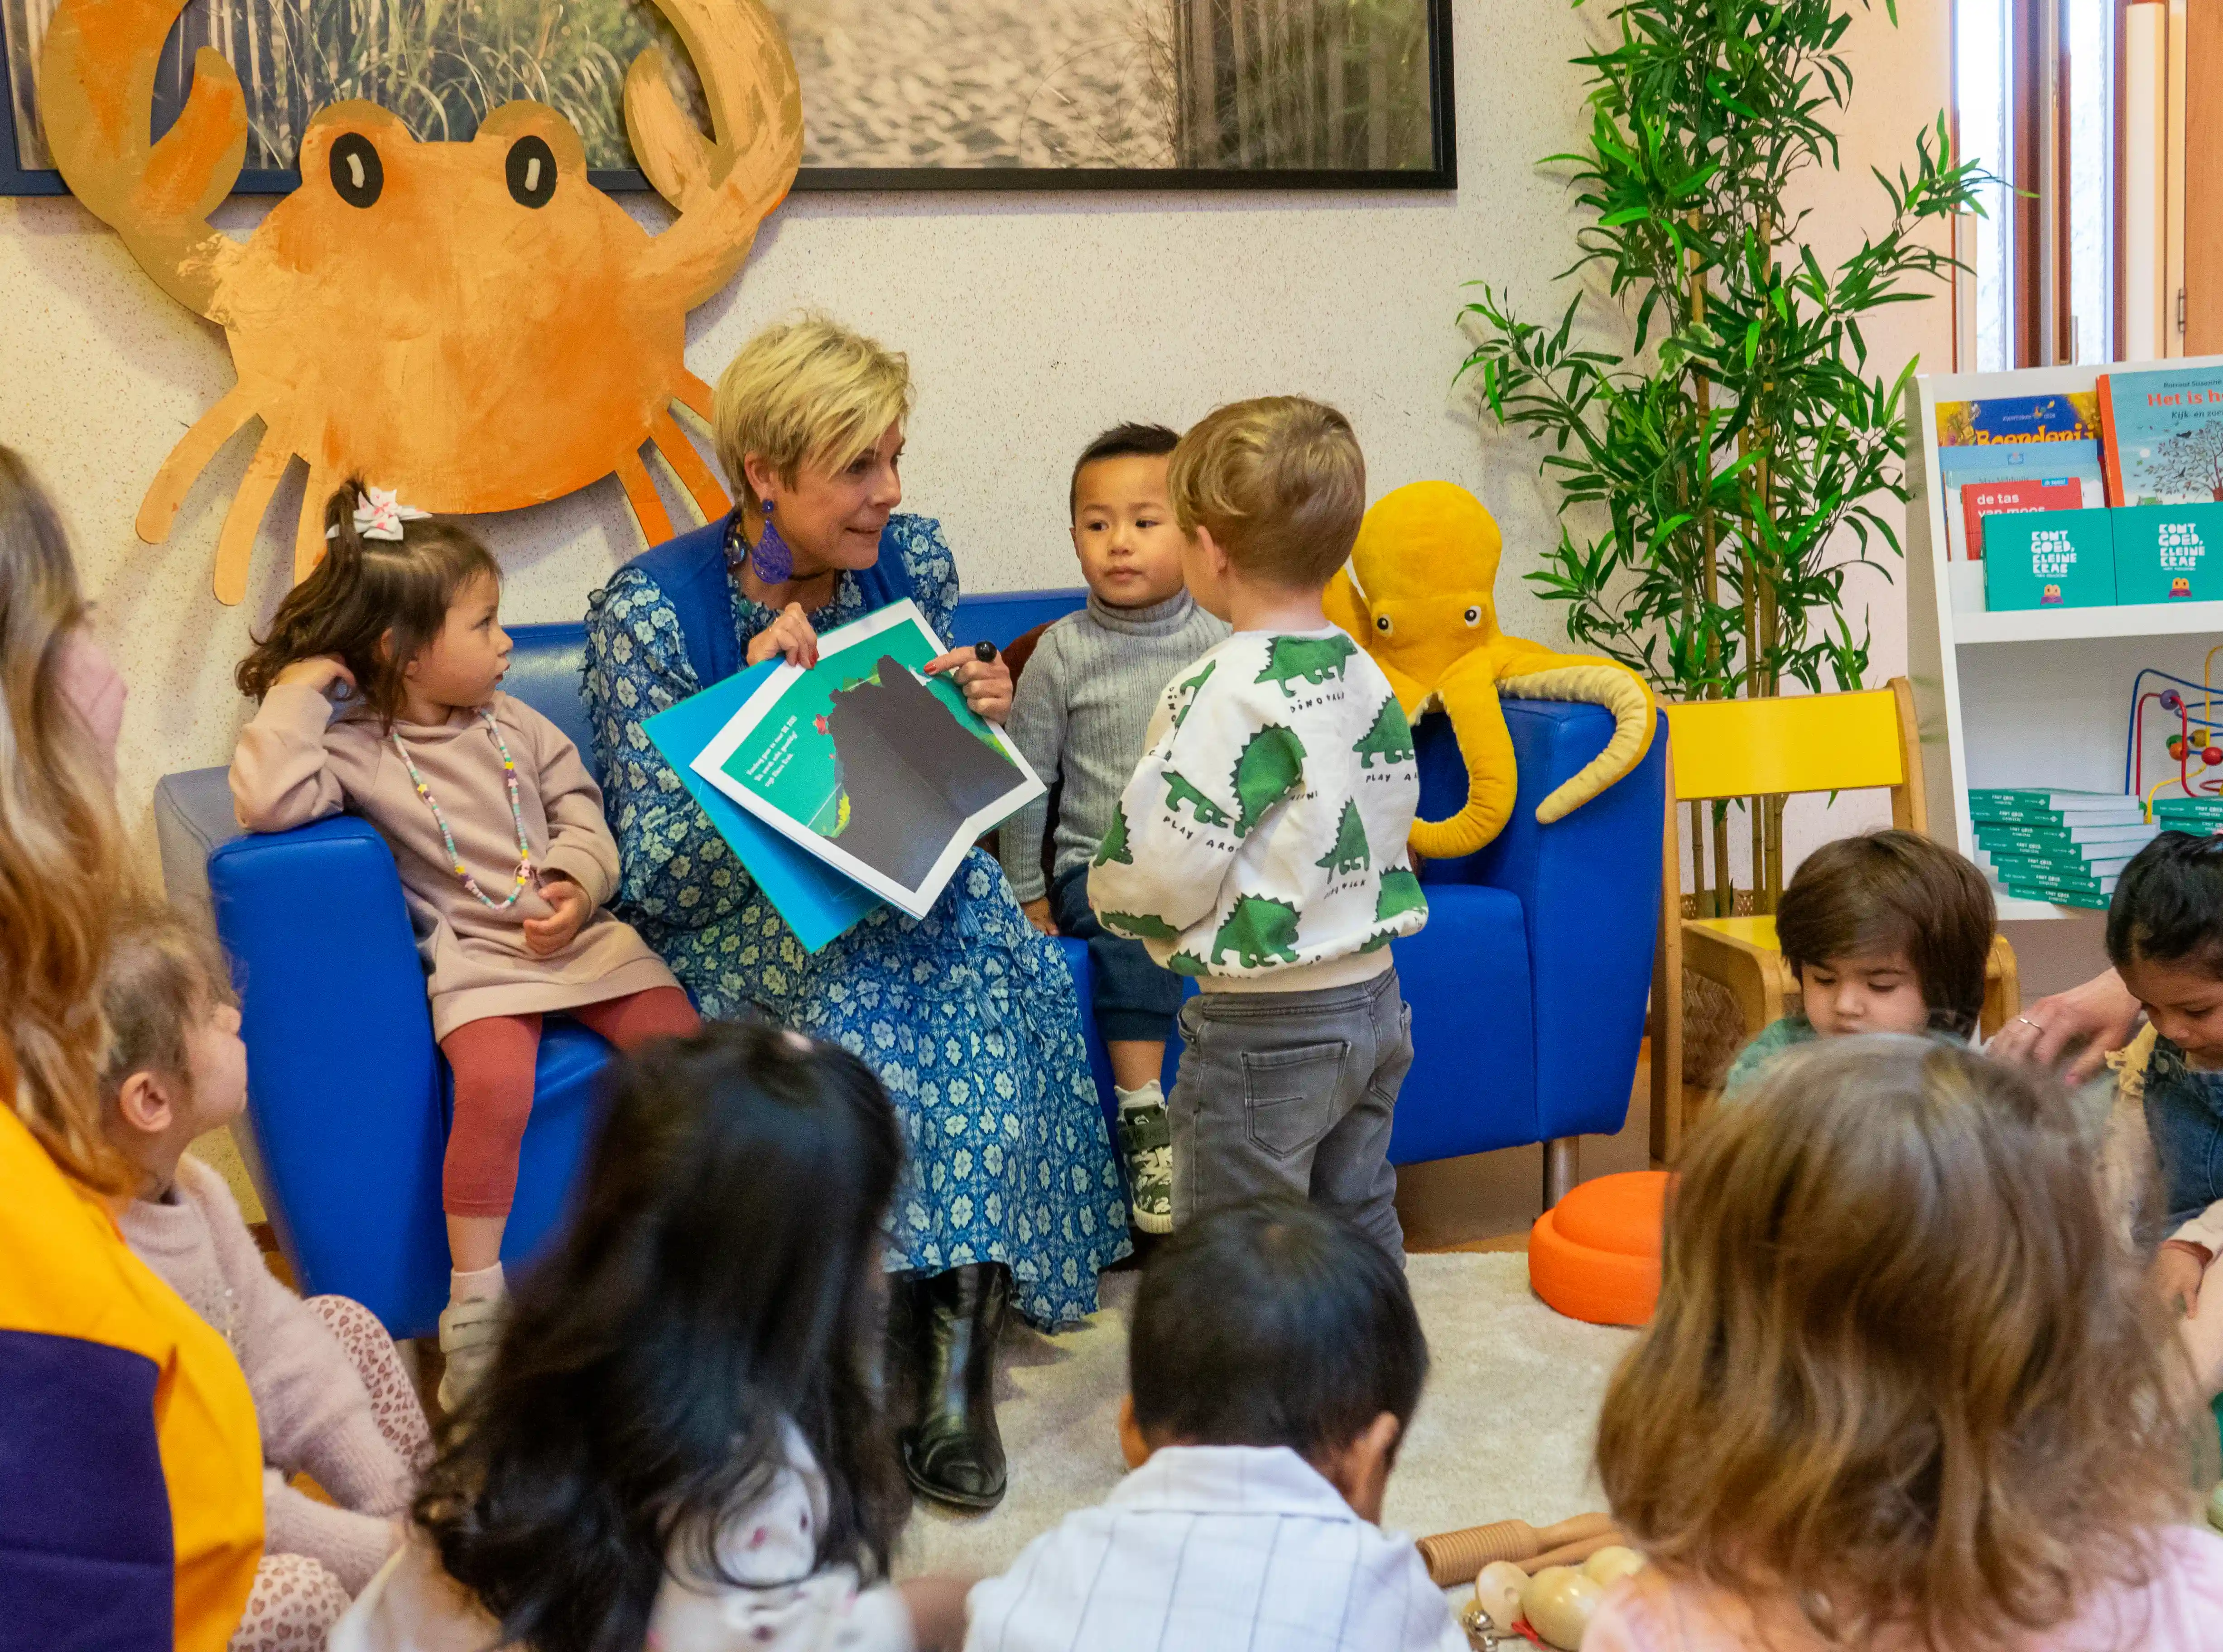 Laurentien van Oranje leest voor bij peuteropvang De Toverspiegel in Den Haag tijdens Dag van de Voorschool